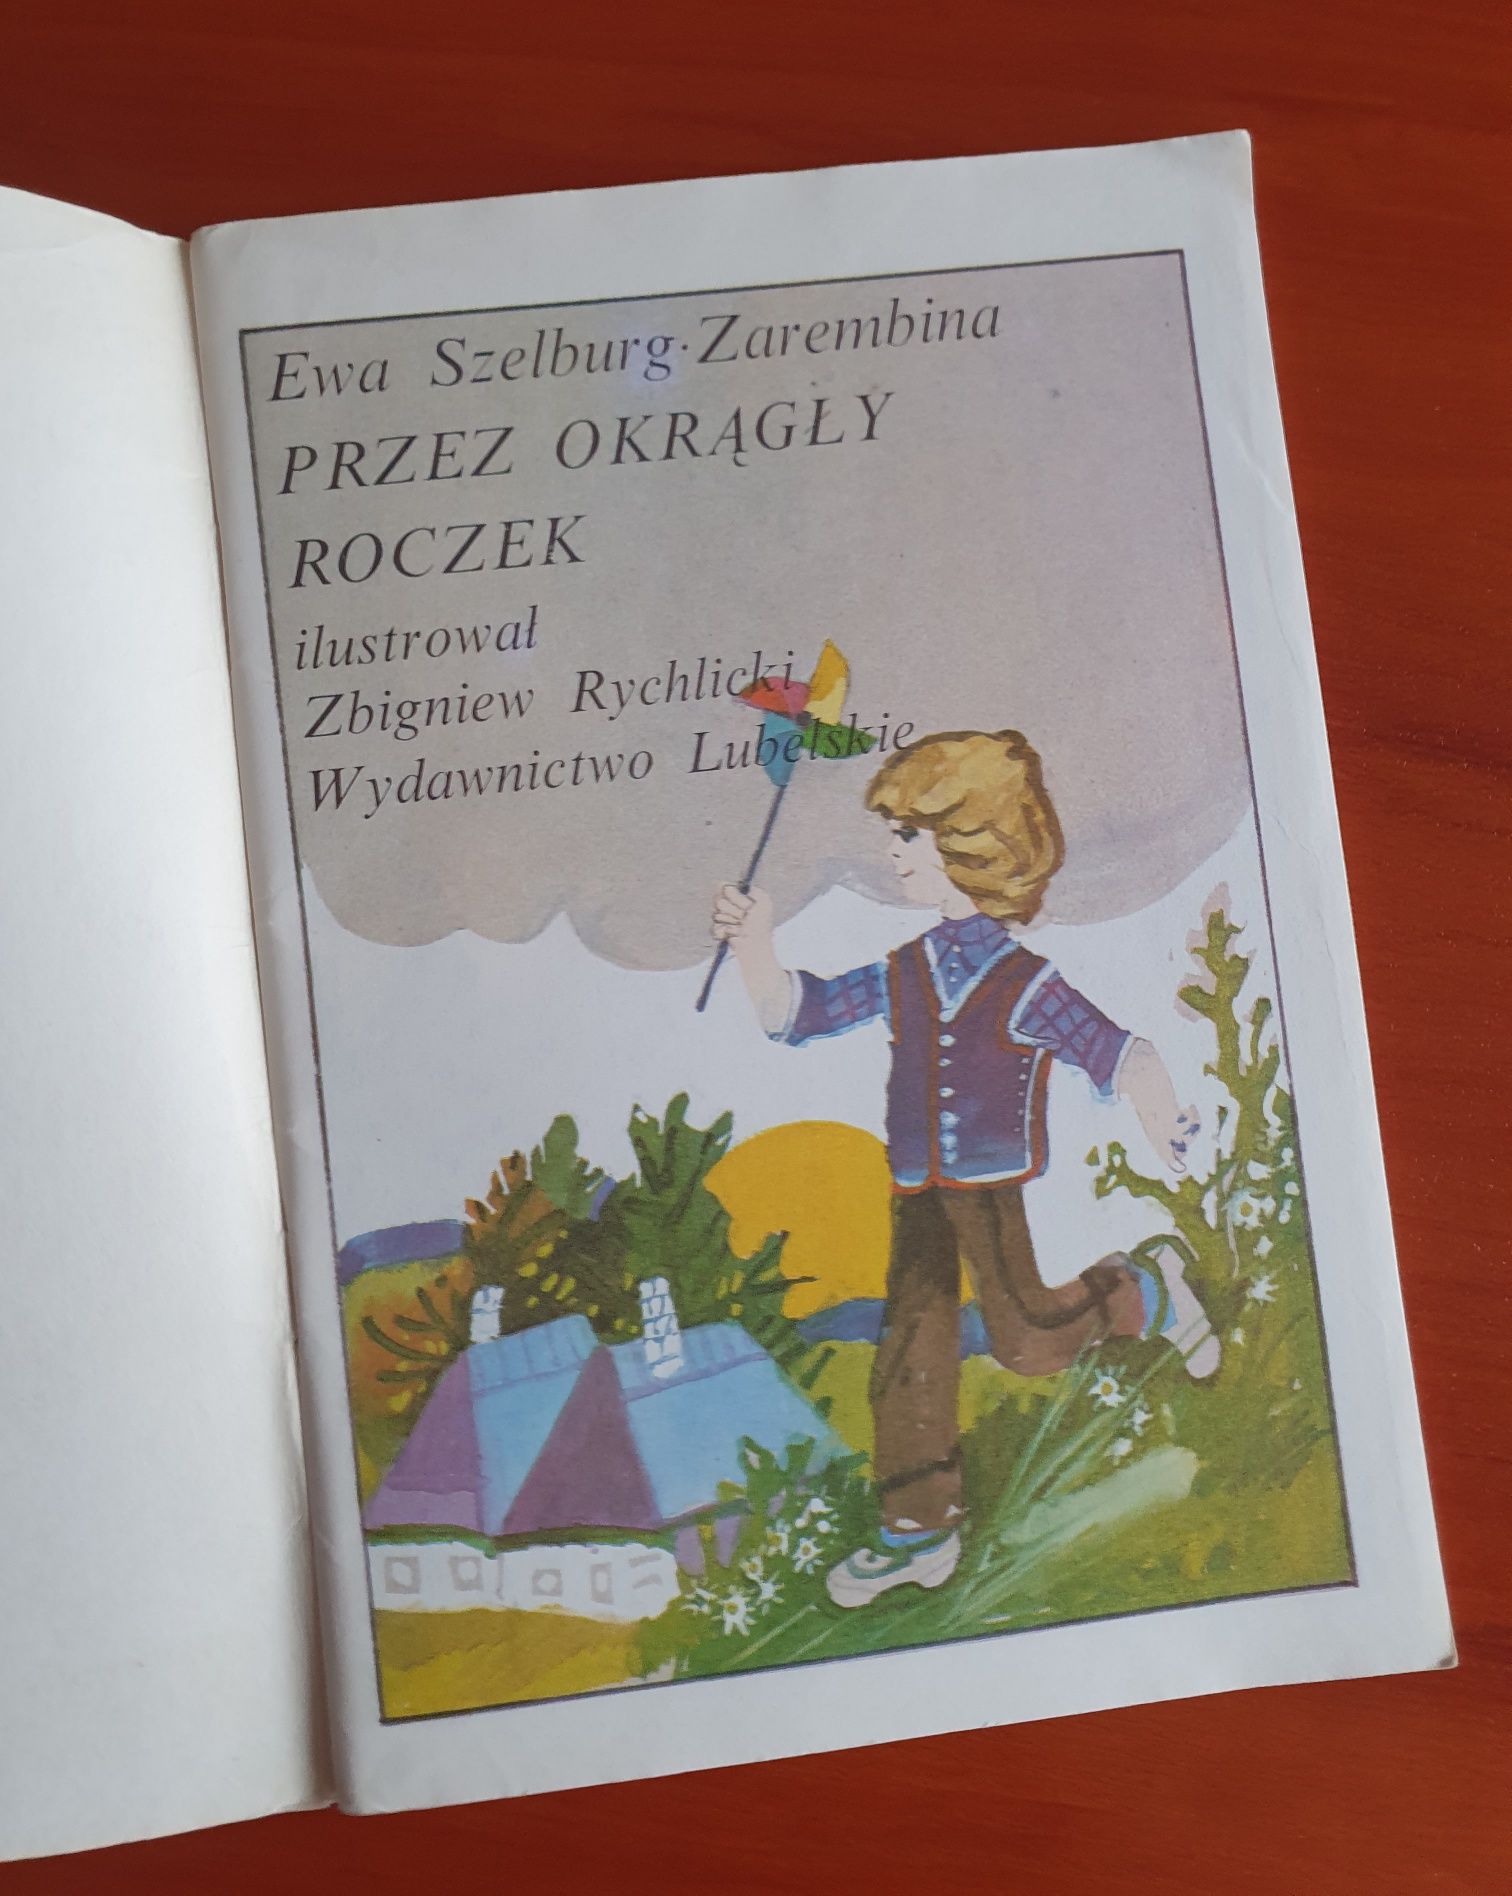 Przez okrągły roczek Ewa Szelburg Zarembina 1989 retro PRL vintage